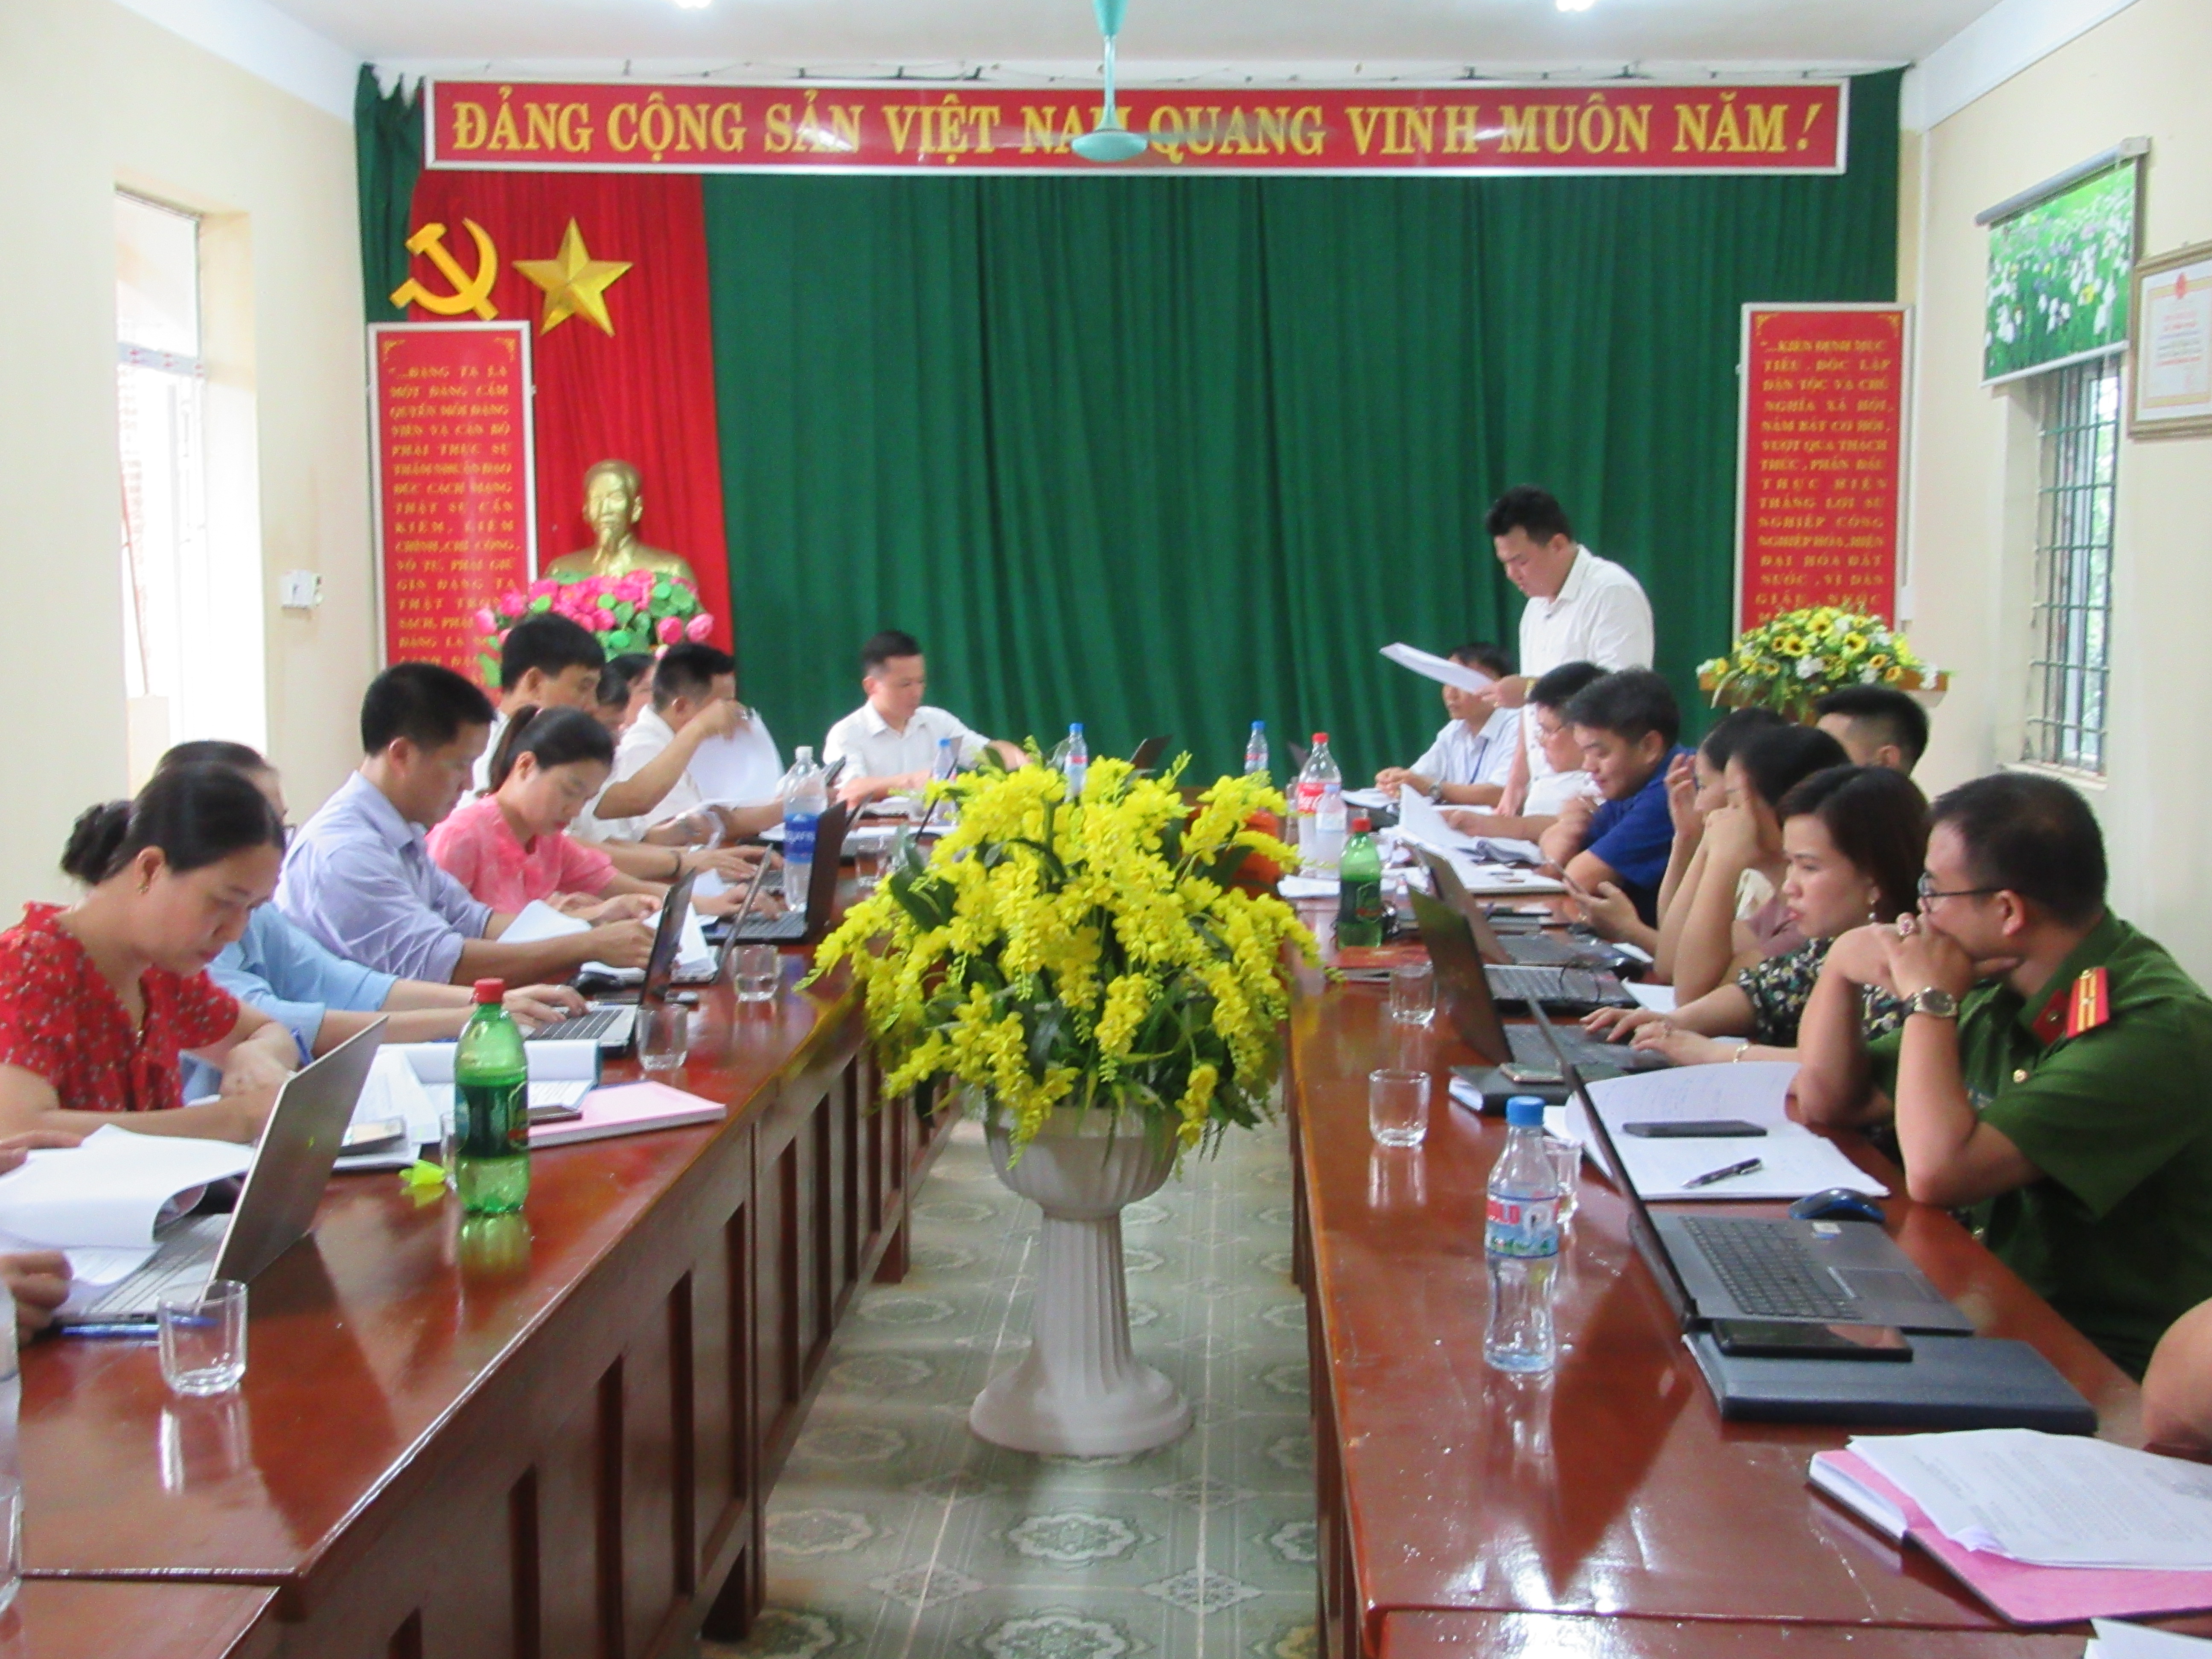 Đảng ủy - HĐND-UBND xã Vĩnh Hảo làm việc với đoàn kiểm tra huyện Bắc Quang về  công tác phát triển kinh tế - Văn hóa xã hội 9 tháng đầu năm 2020